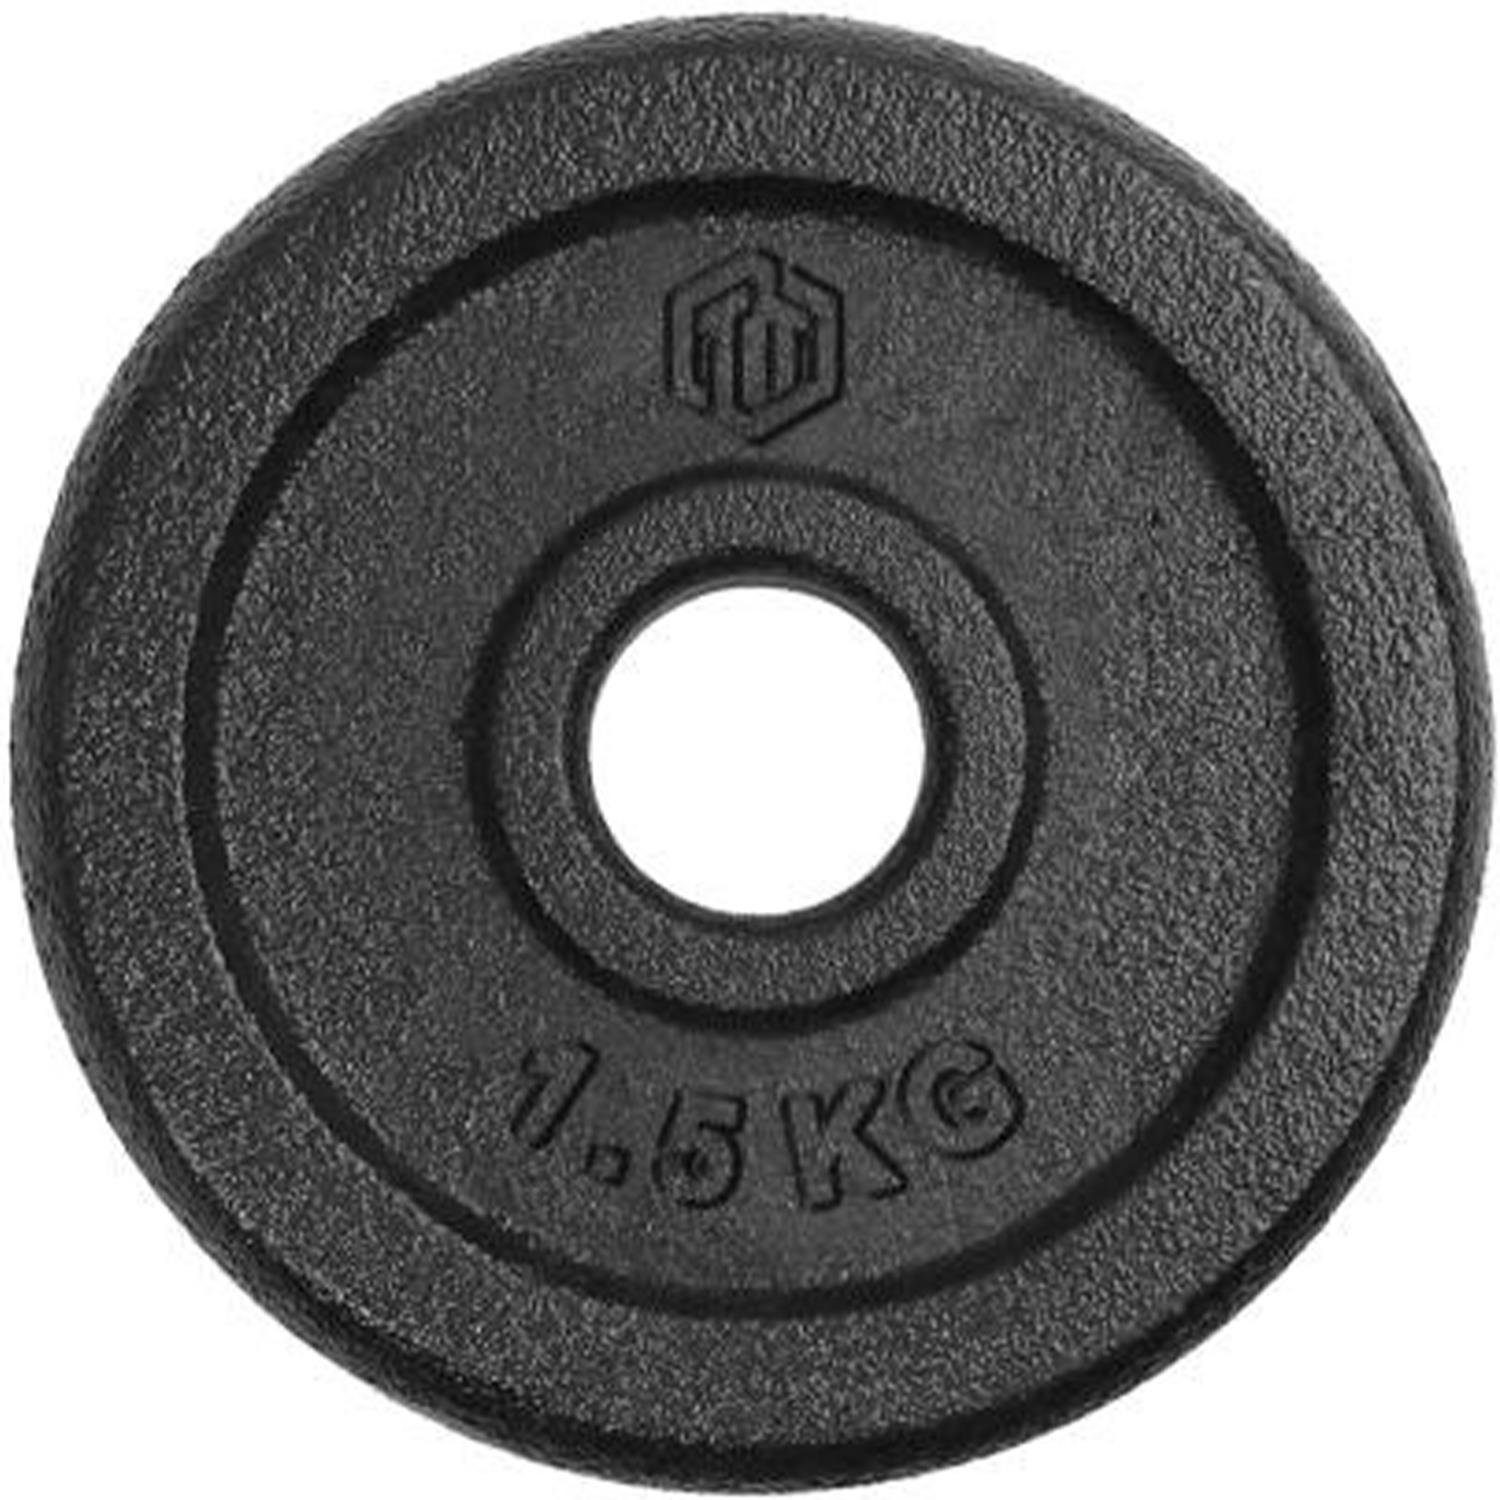 24 Hantelscheibe Gusseisen 30/31mm, 1,5KG Sporttrend 24® Sporttrend Hantelscheiben Gewichtsscheibe